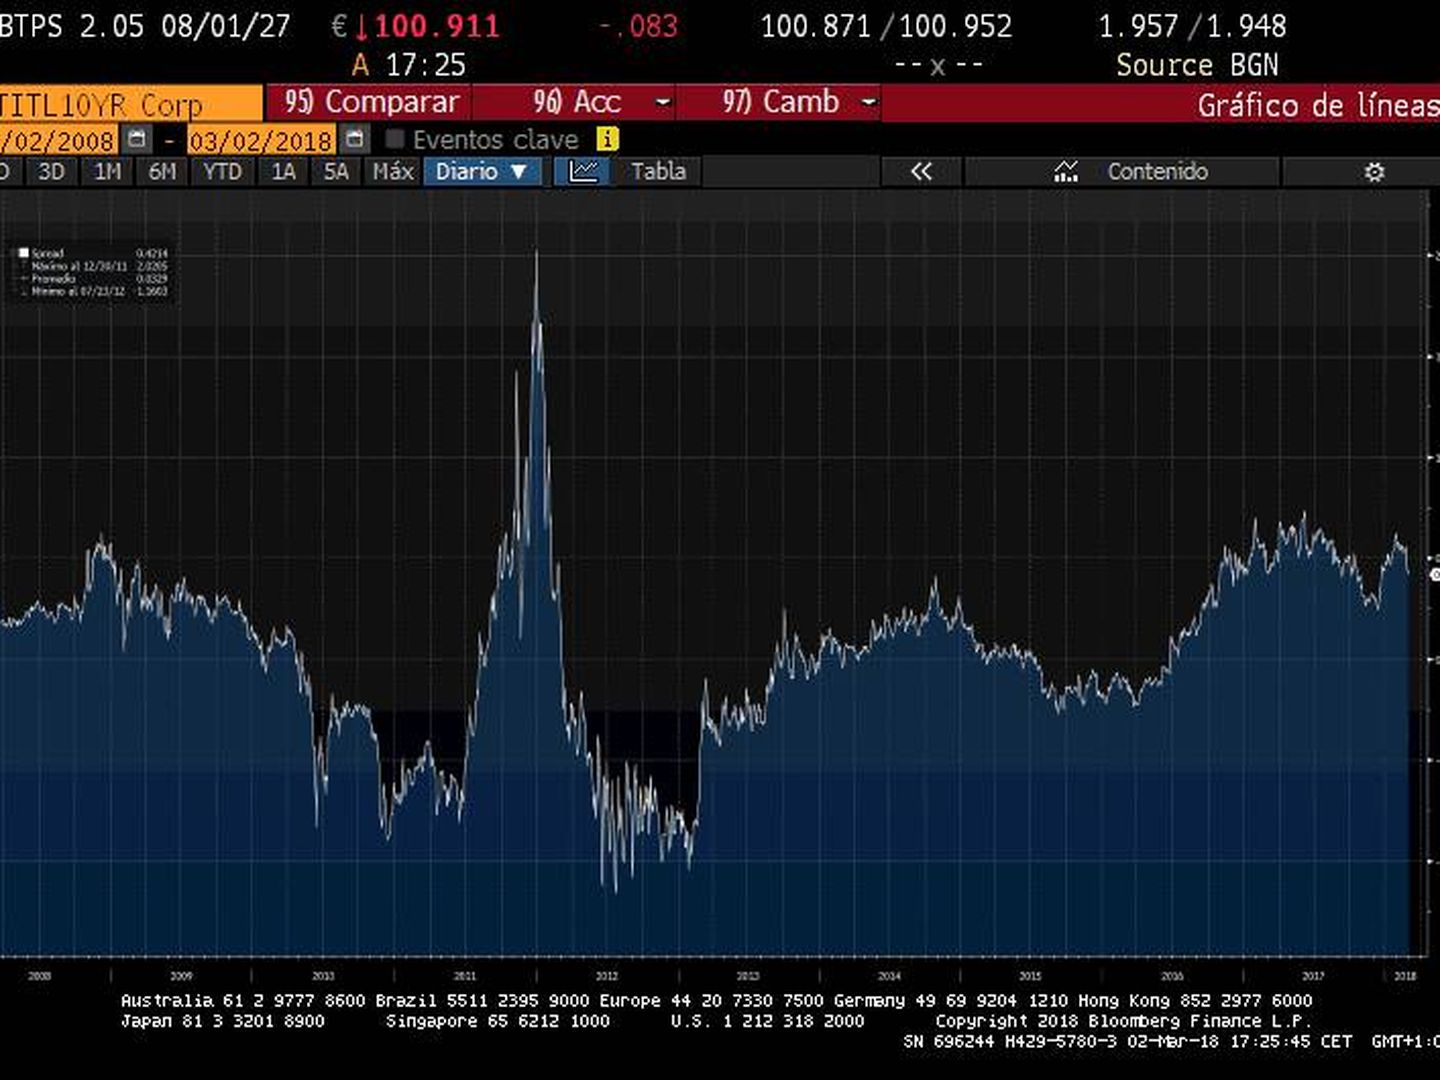 Diferencial del bono italiano frente al español. Fuente: Bloomberg.